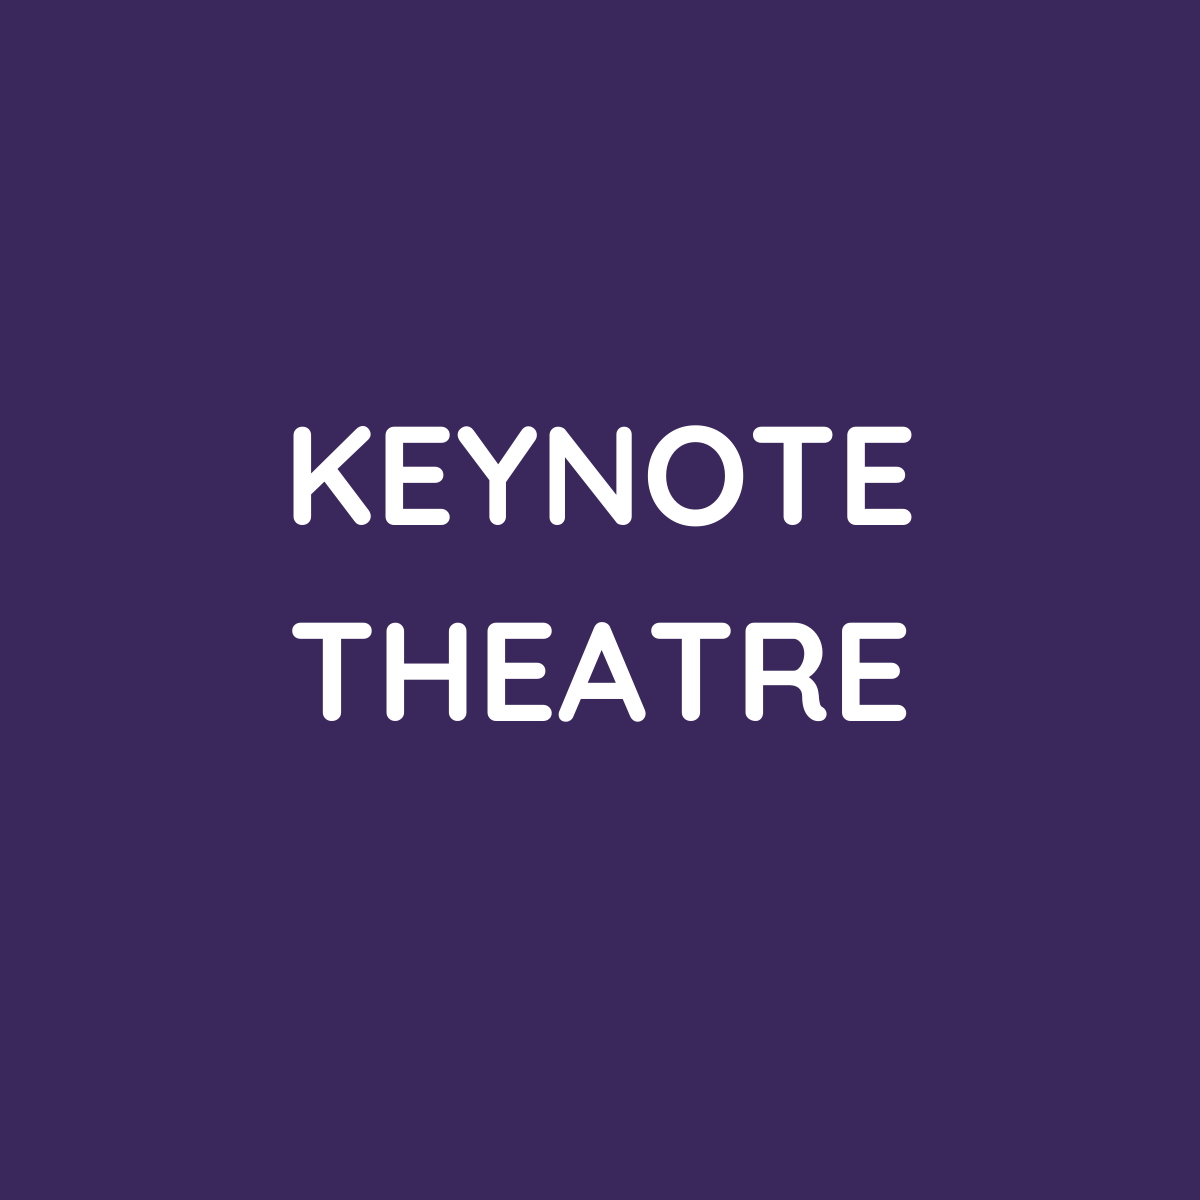 Keynote theatre